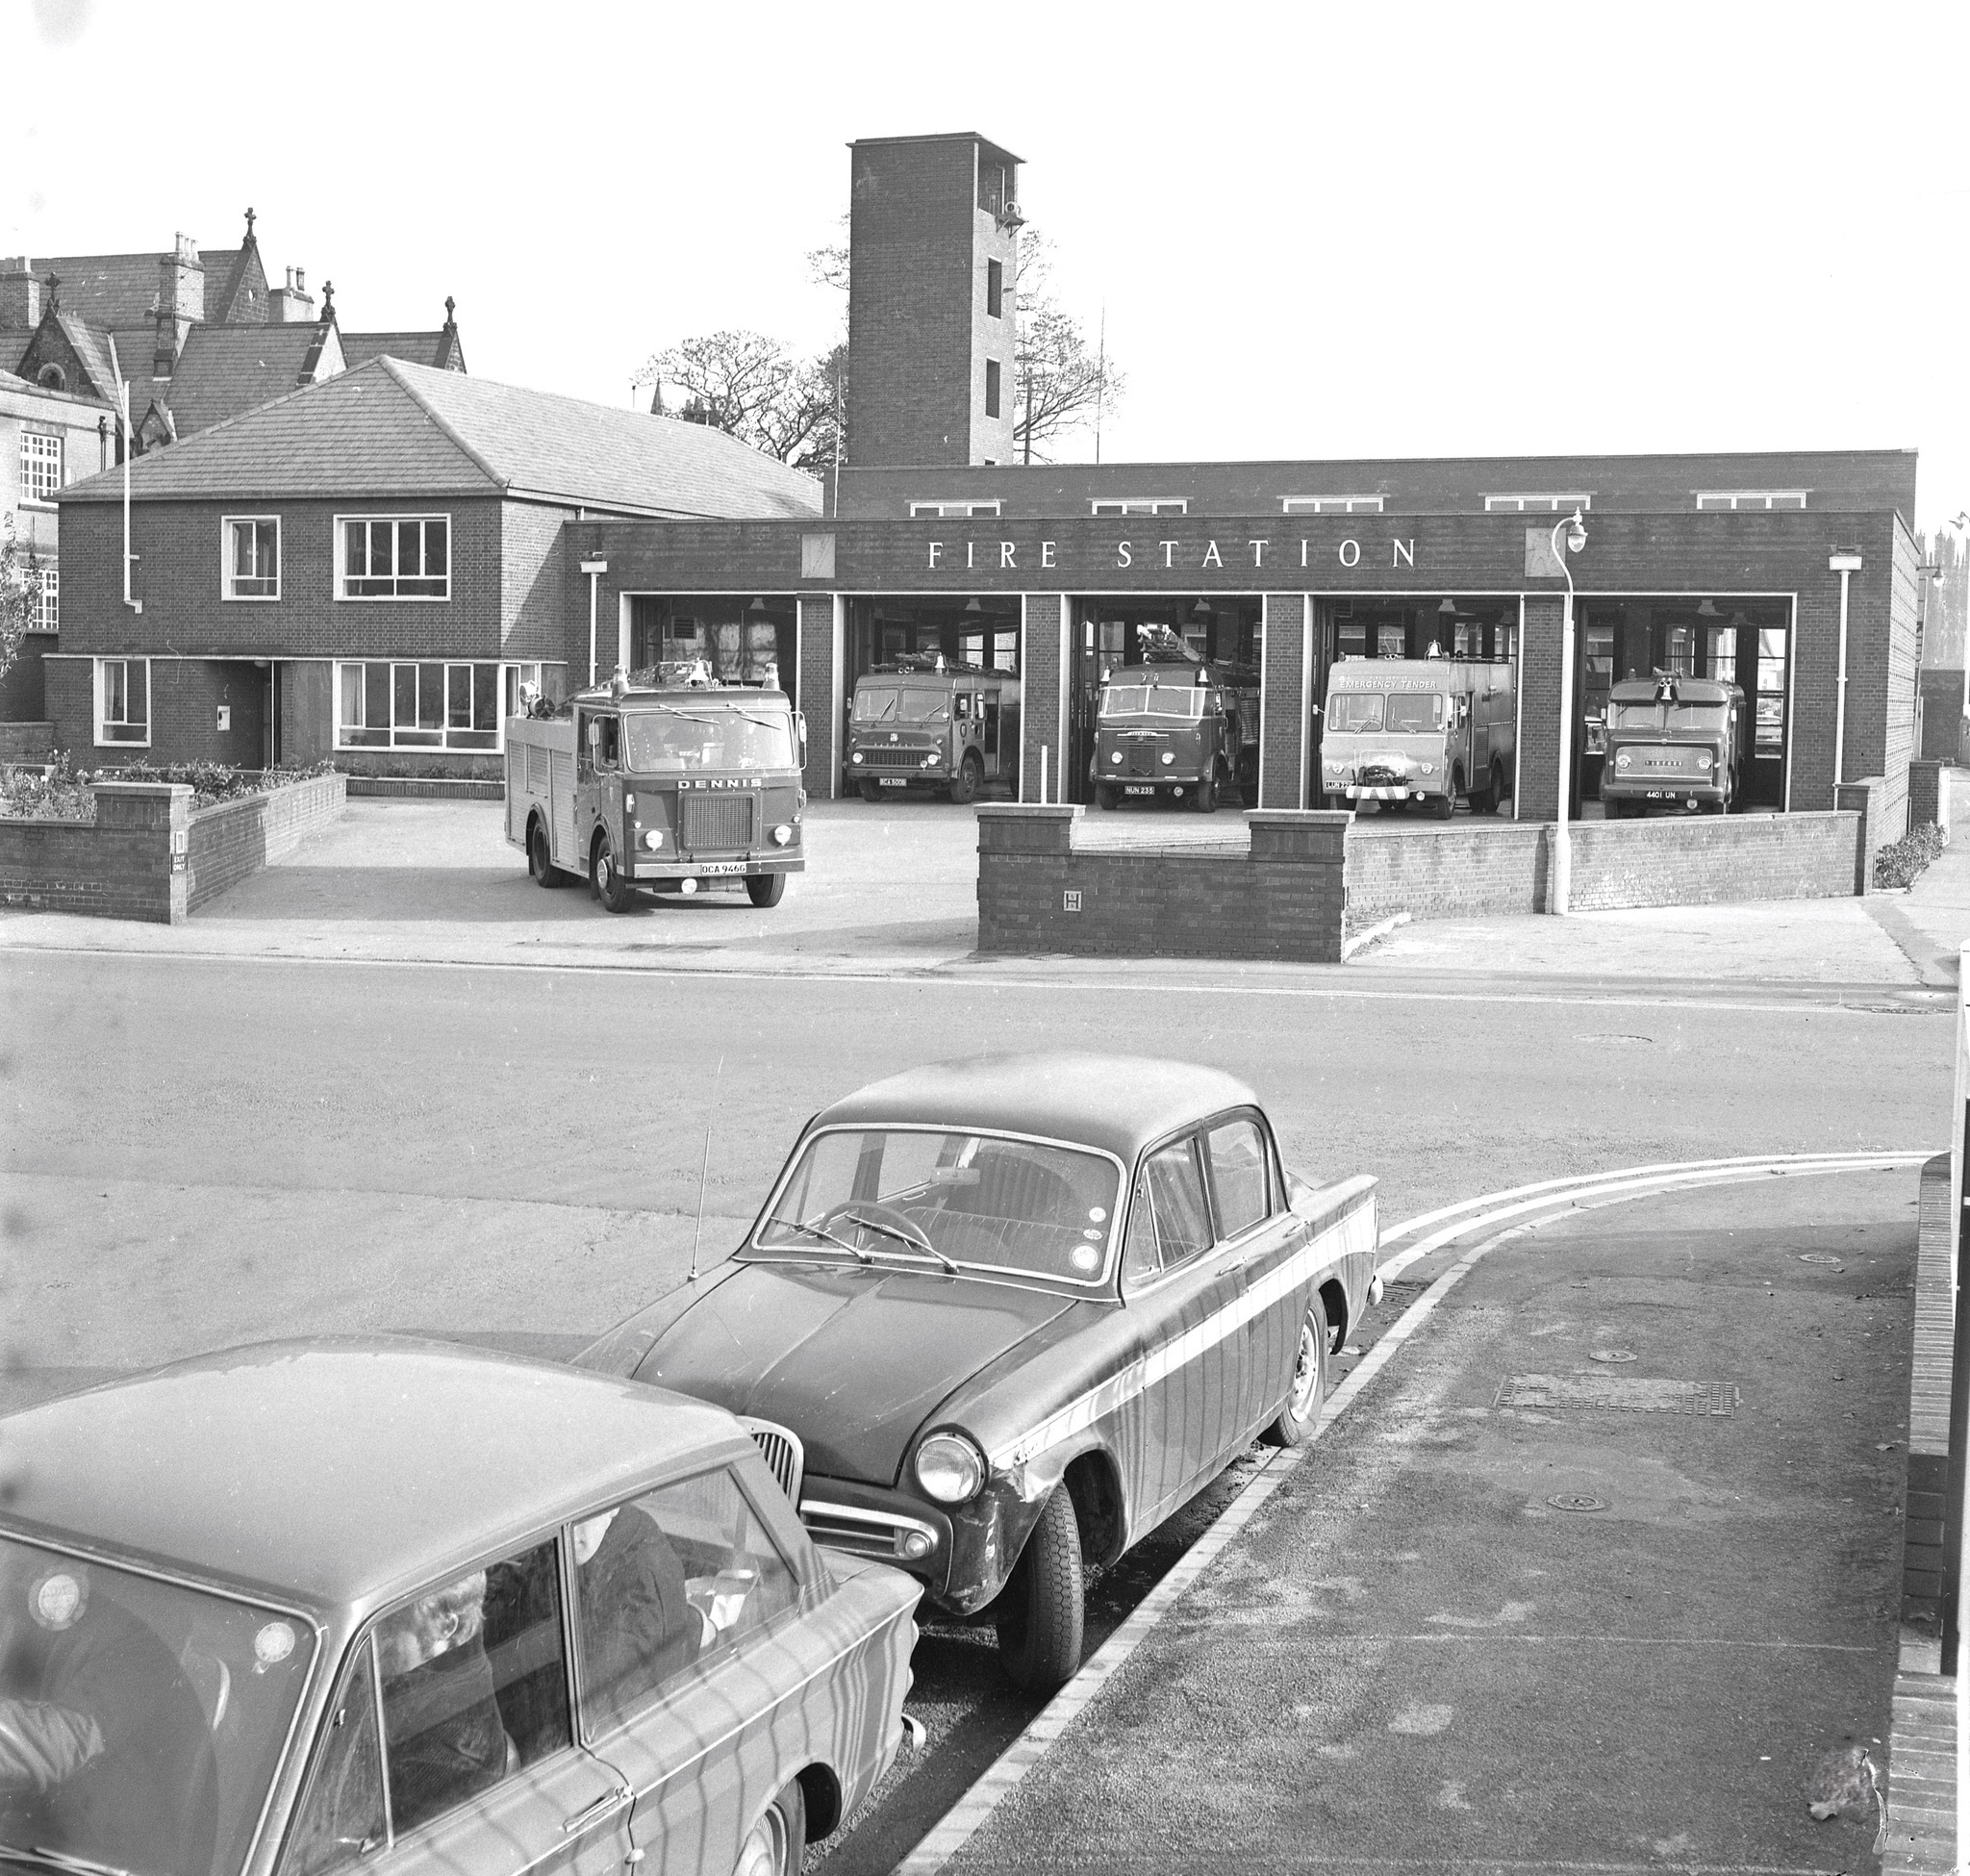 Wrexham Fire Station, November 1969.